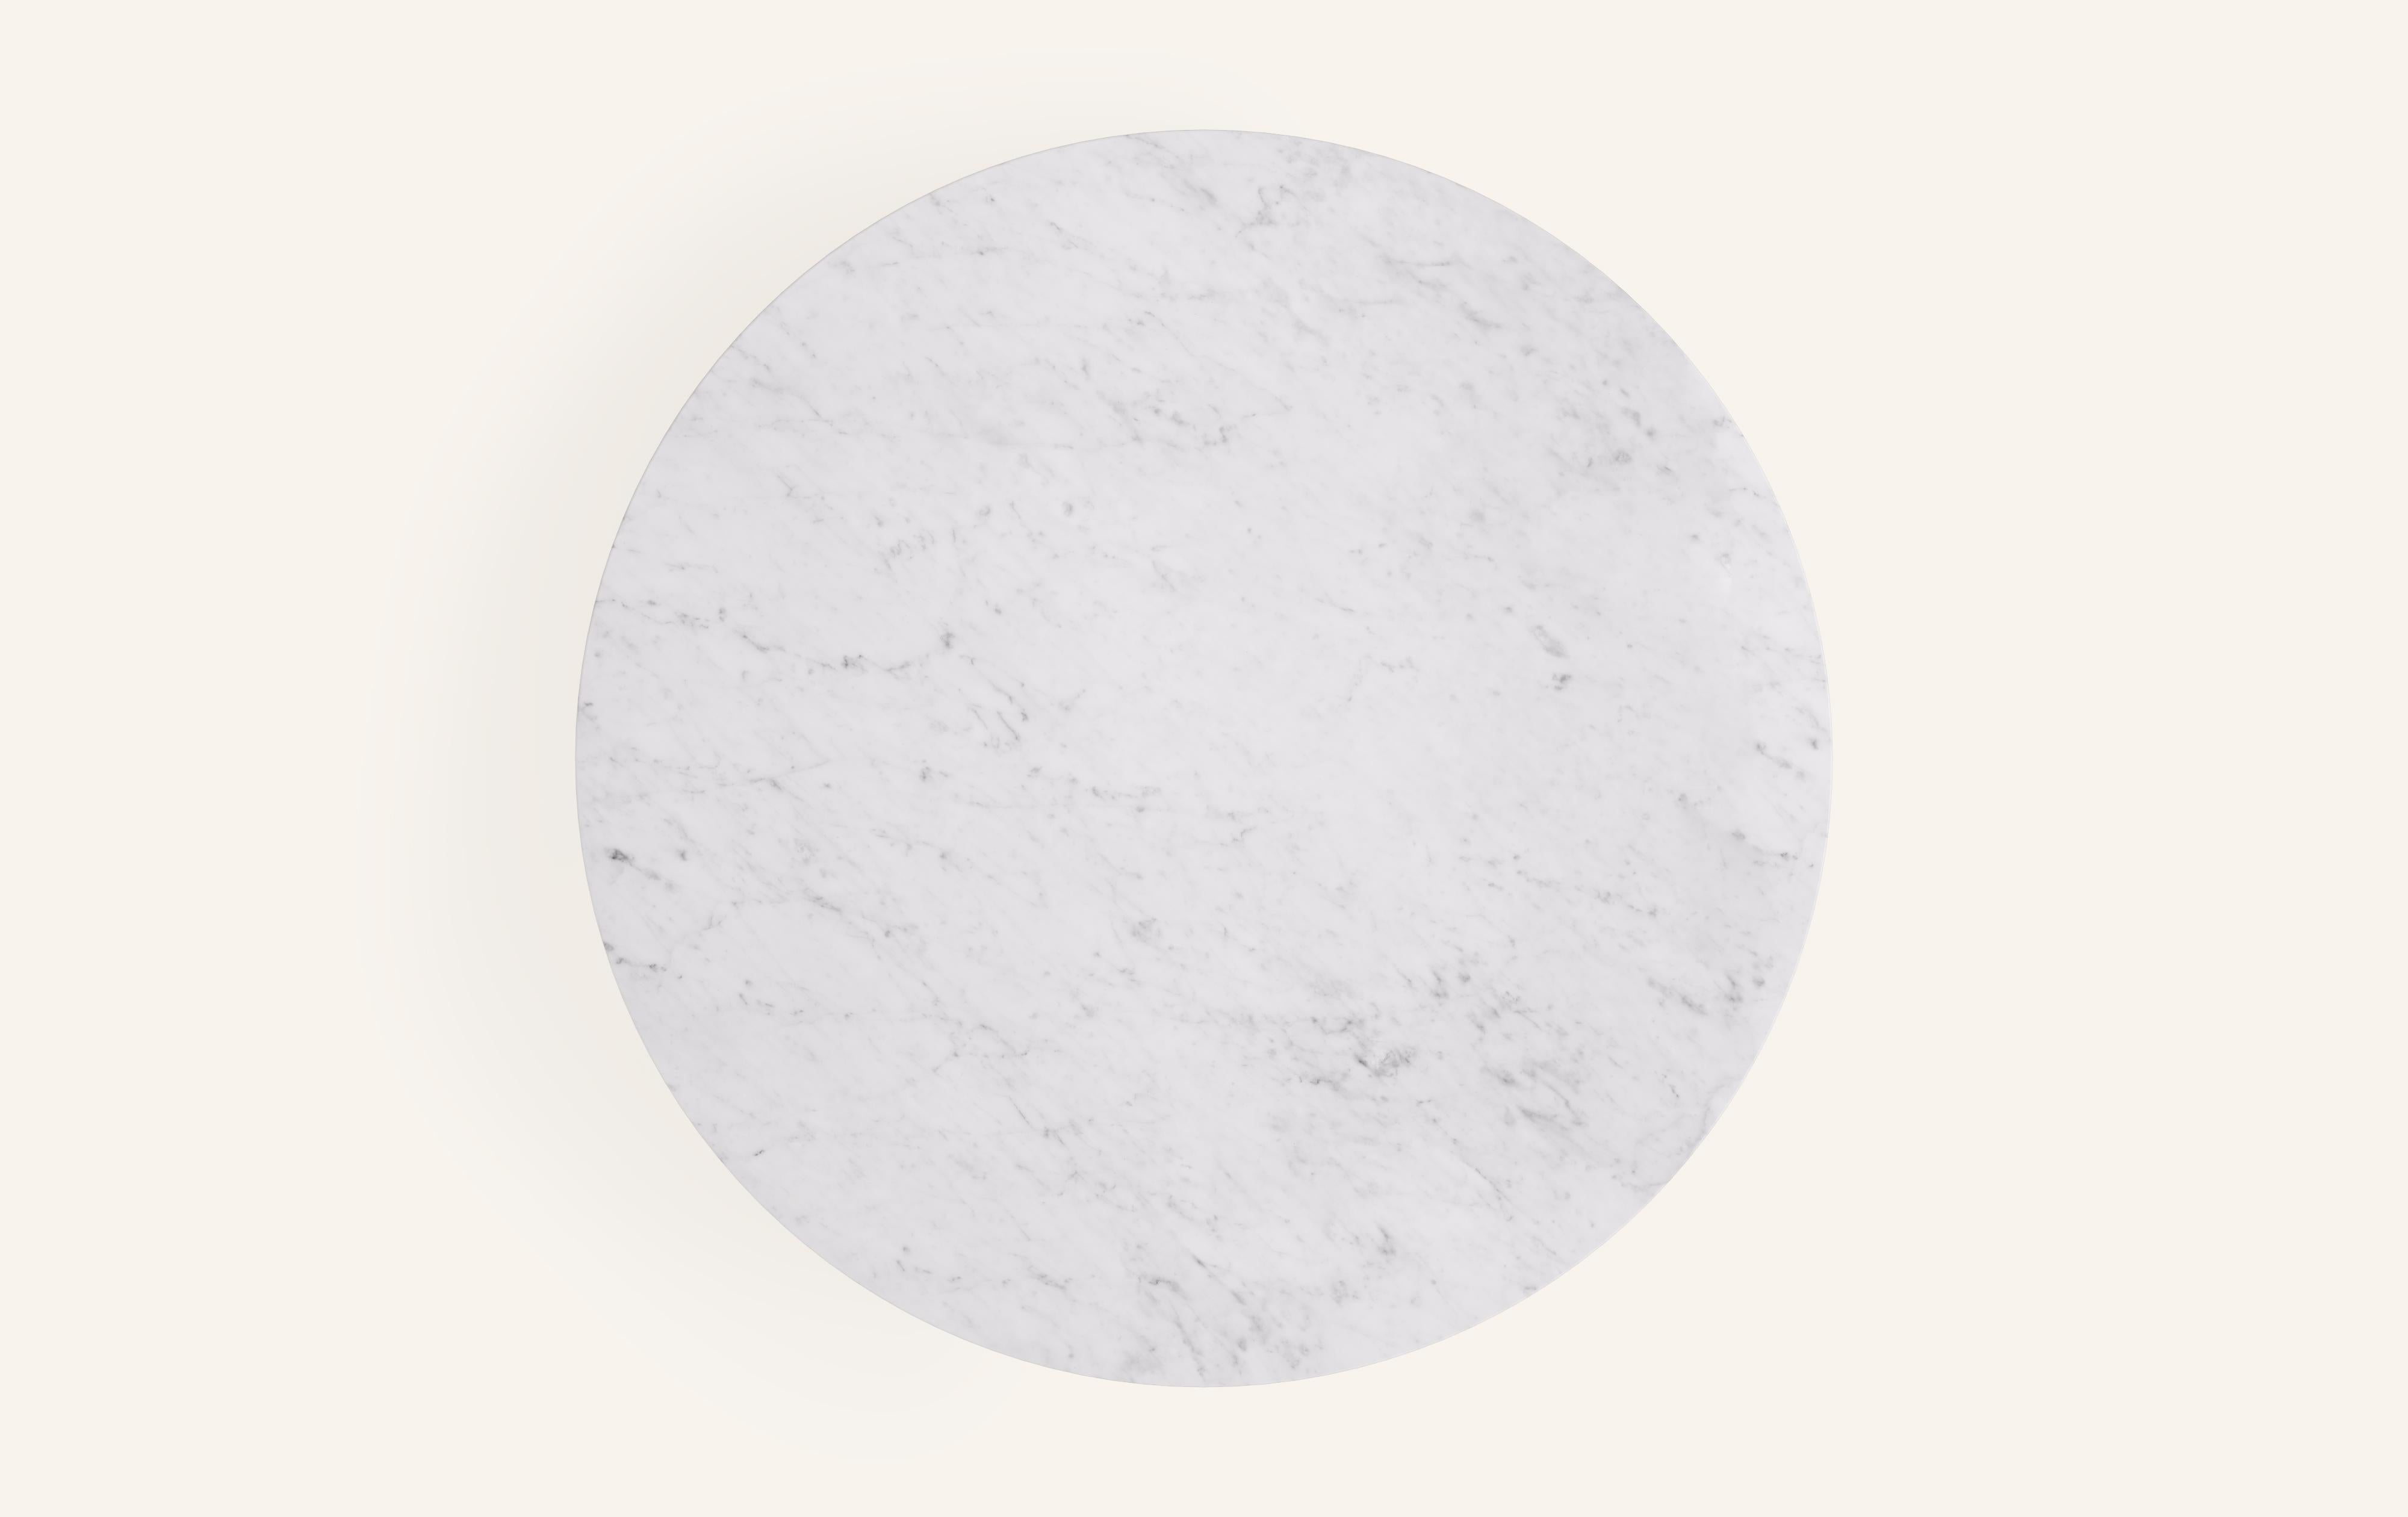 American FORM(LA) Sfera Round Coffee Table 36”L x 36”W x 16”H Carrara Bianco Marble For Sale